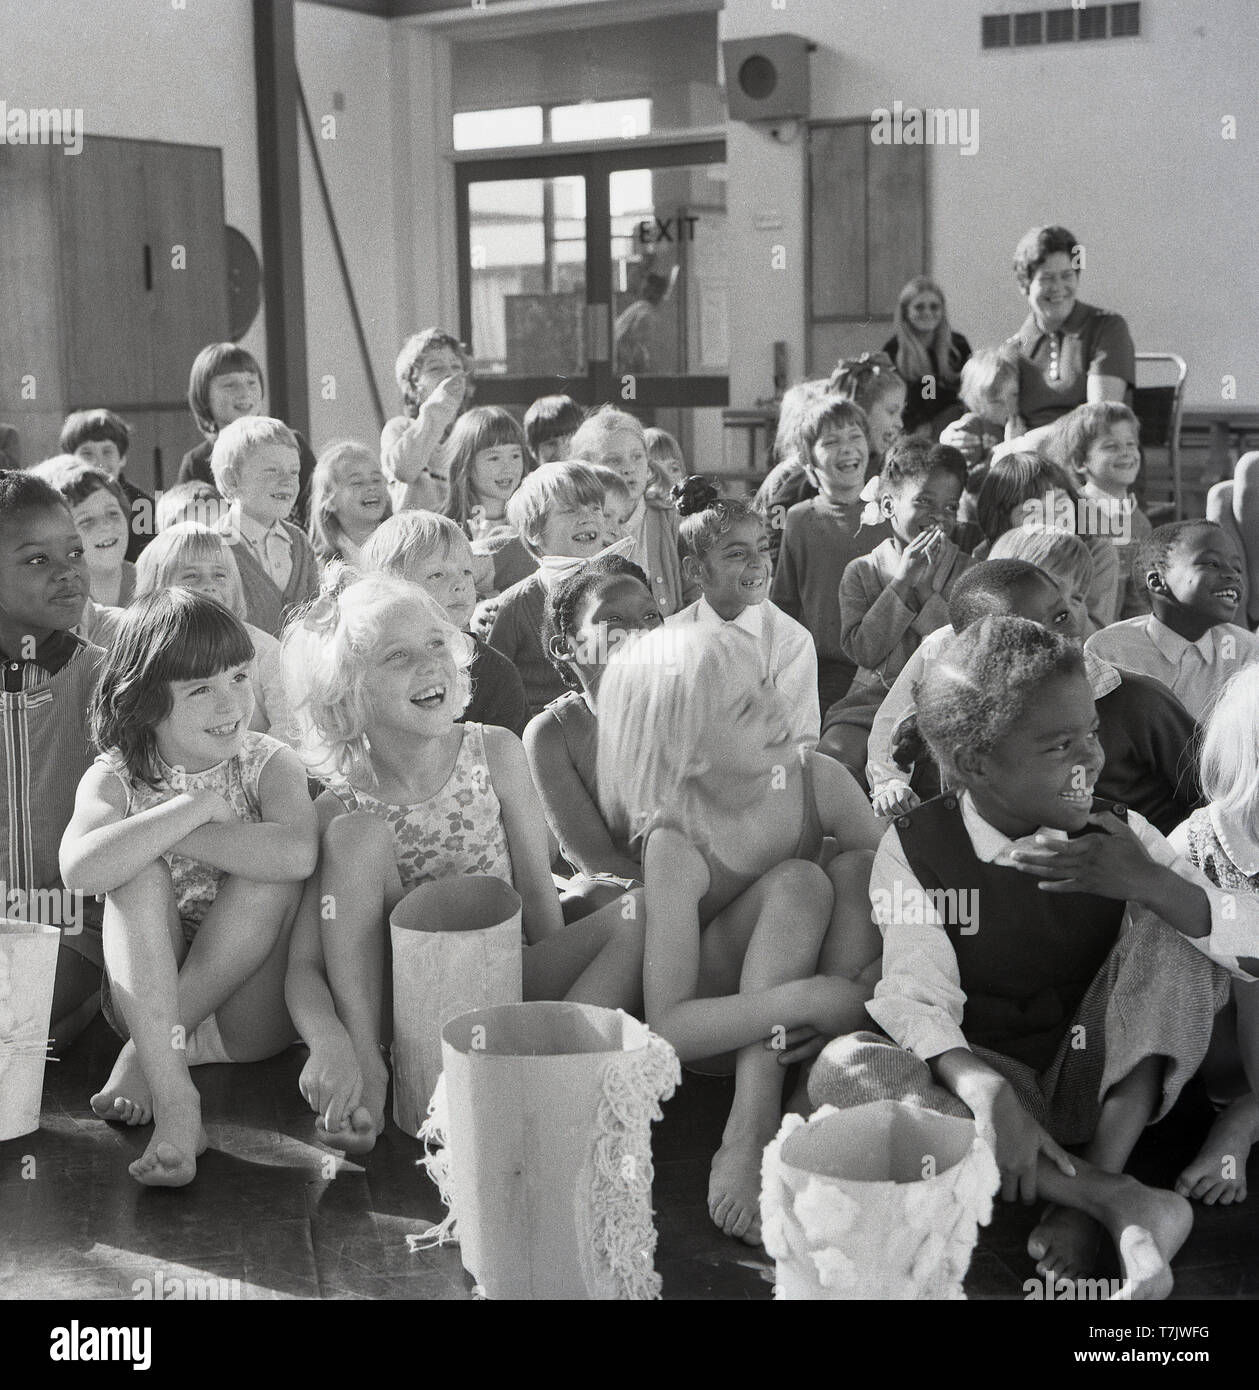 Années 1960, historiques, les jeunes enfants de l'école dans le hall de l'école ensemble assis sur le sol, riant d'être divertis par l'orateur invité, un clown de cirque, England, UK. Banque D'Images